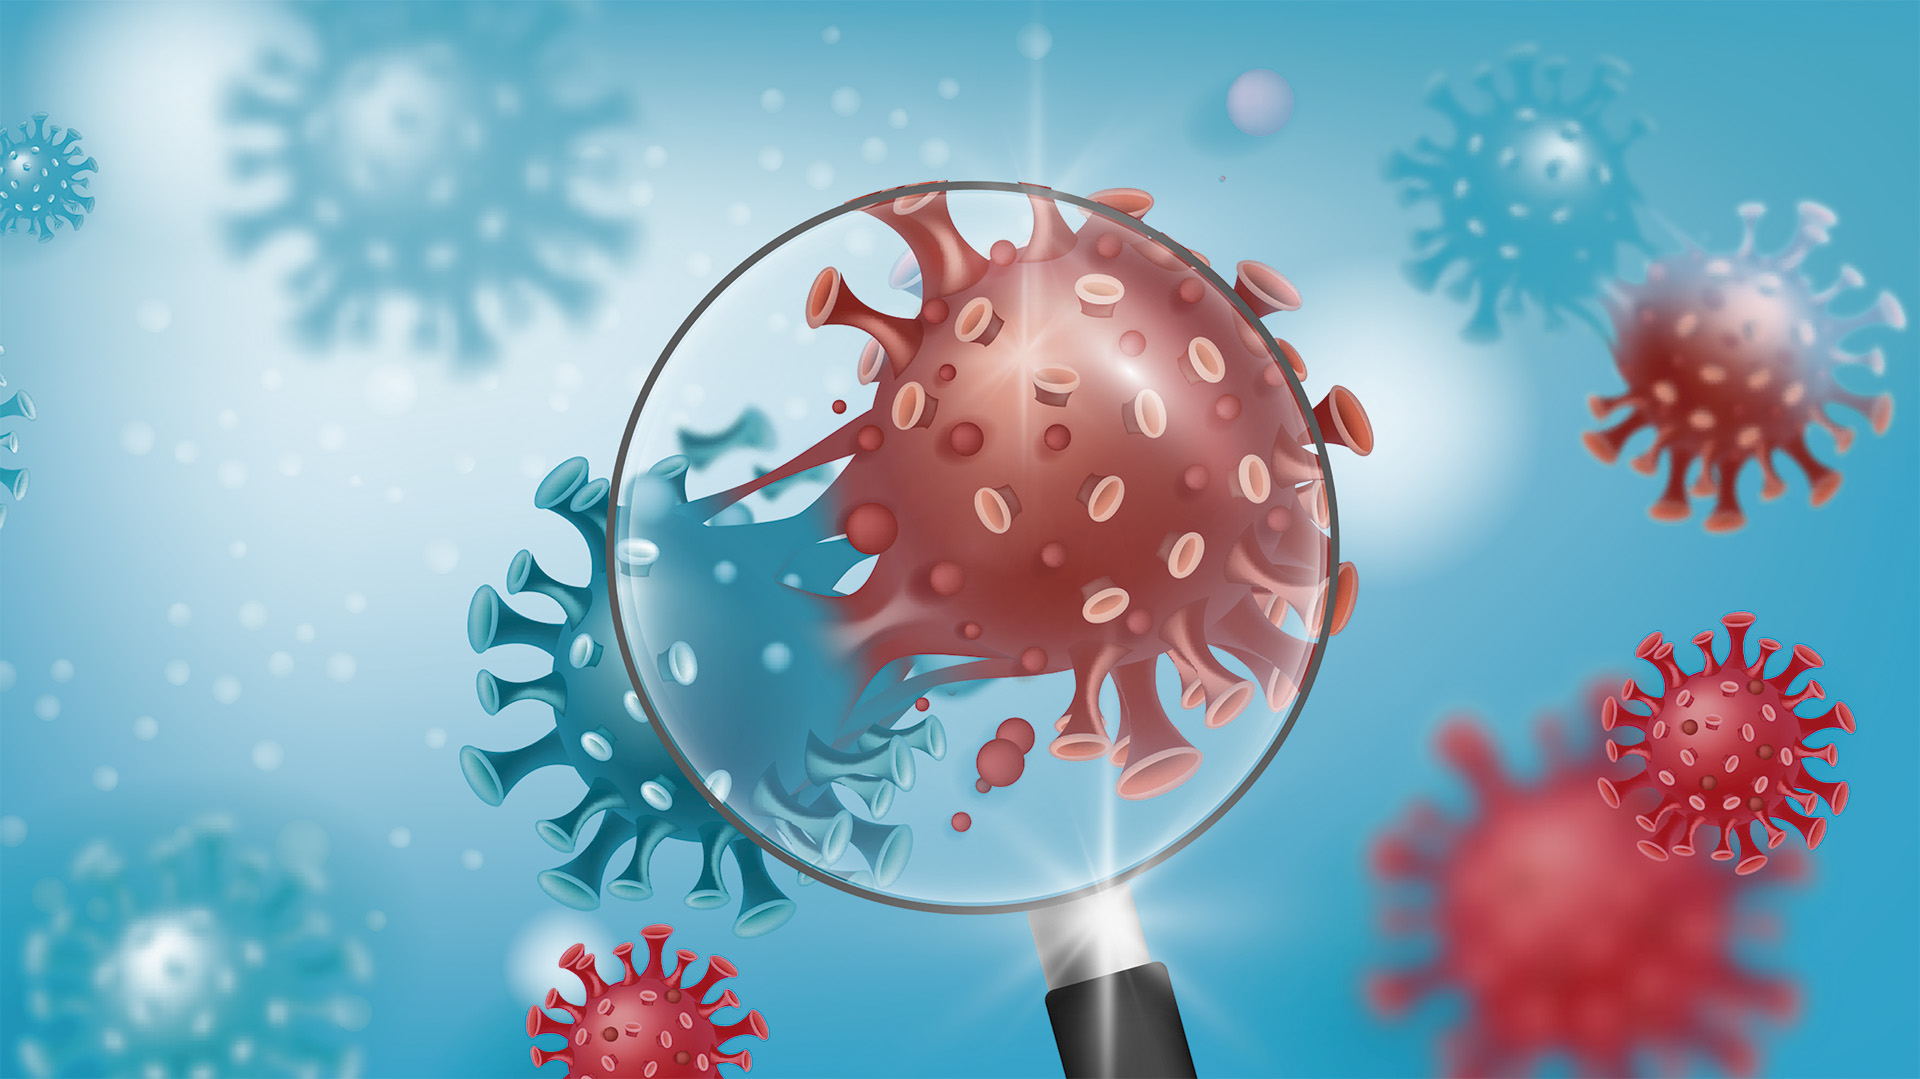 La mutación E484K introduce un cambio que disminuye la unión del virus con los anticuerpos neutralizantes (Foto: Shutterstock.com)